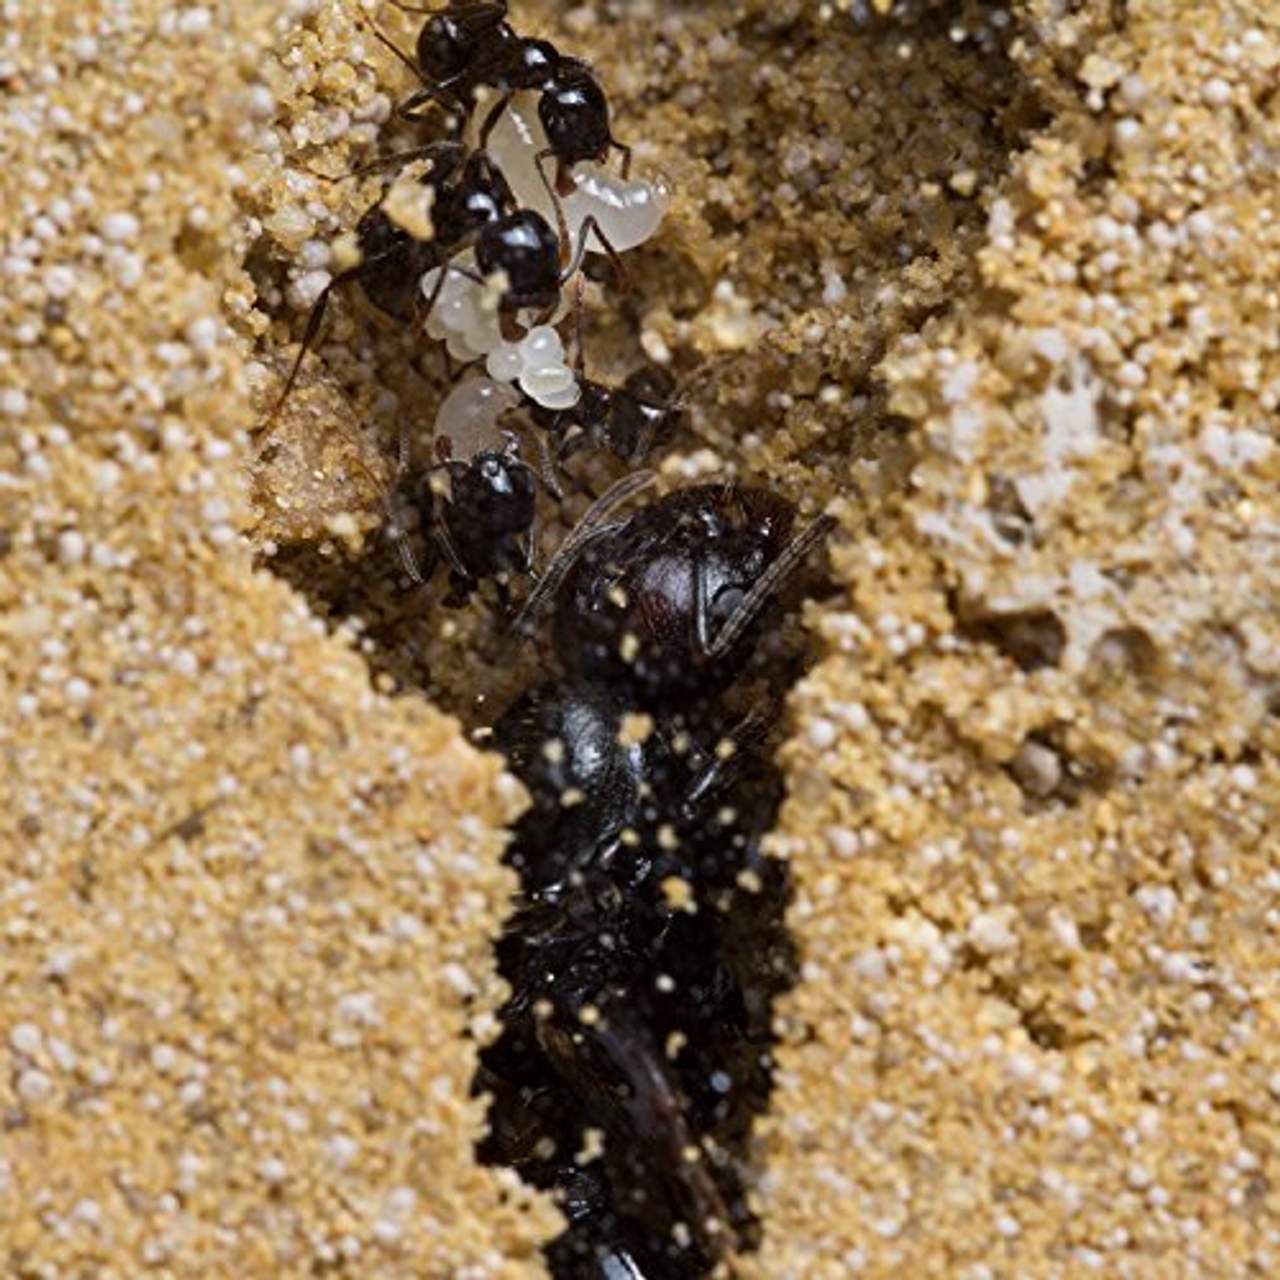 AntHouse Natürliche Ameisenfarm aus Sand